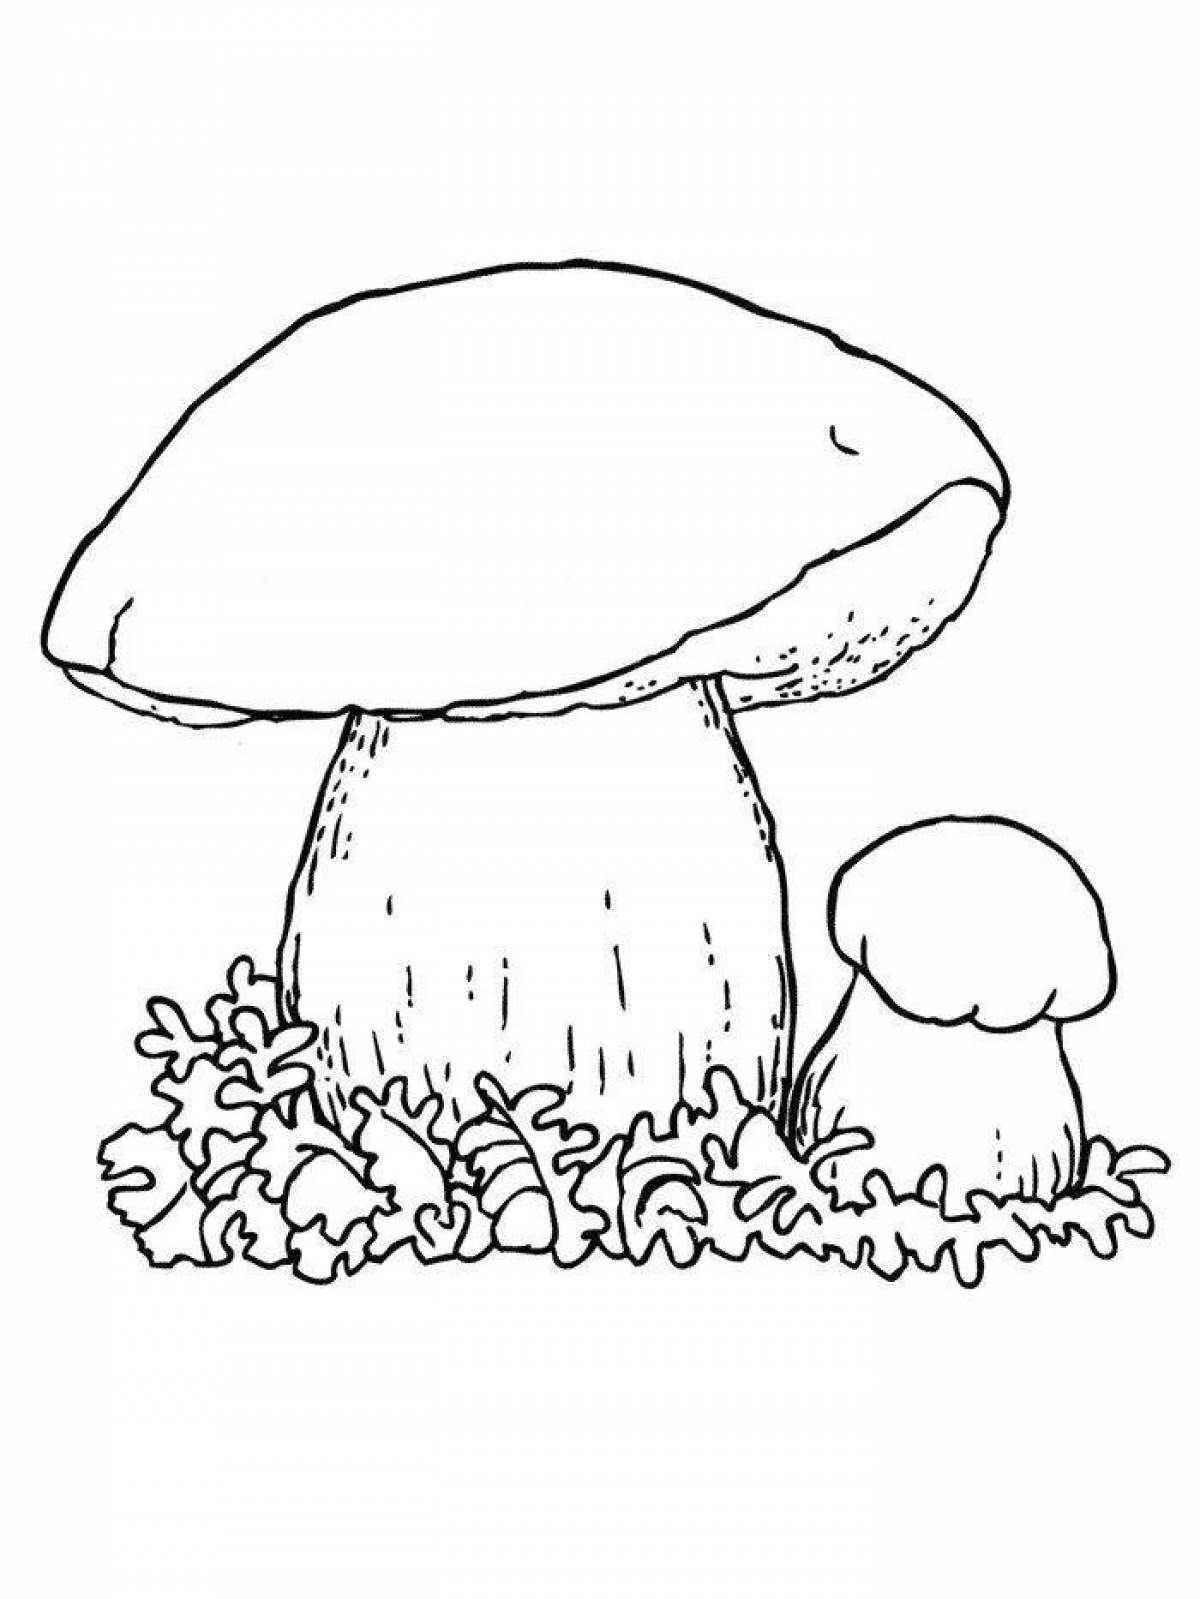 Сложный гриб подберезовик раскраска